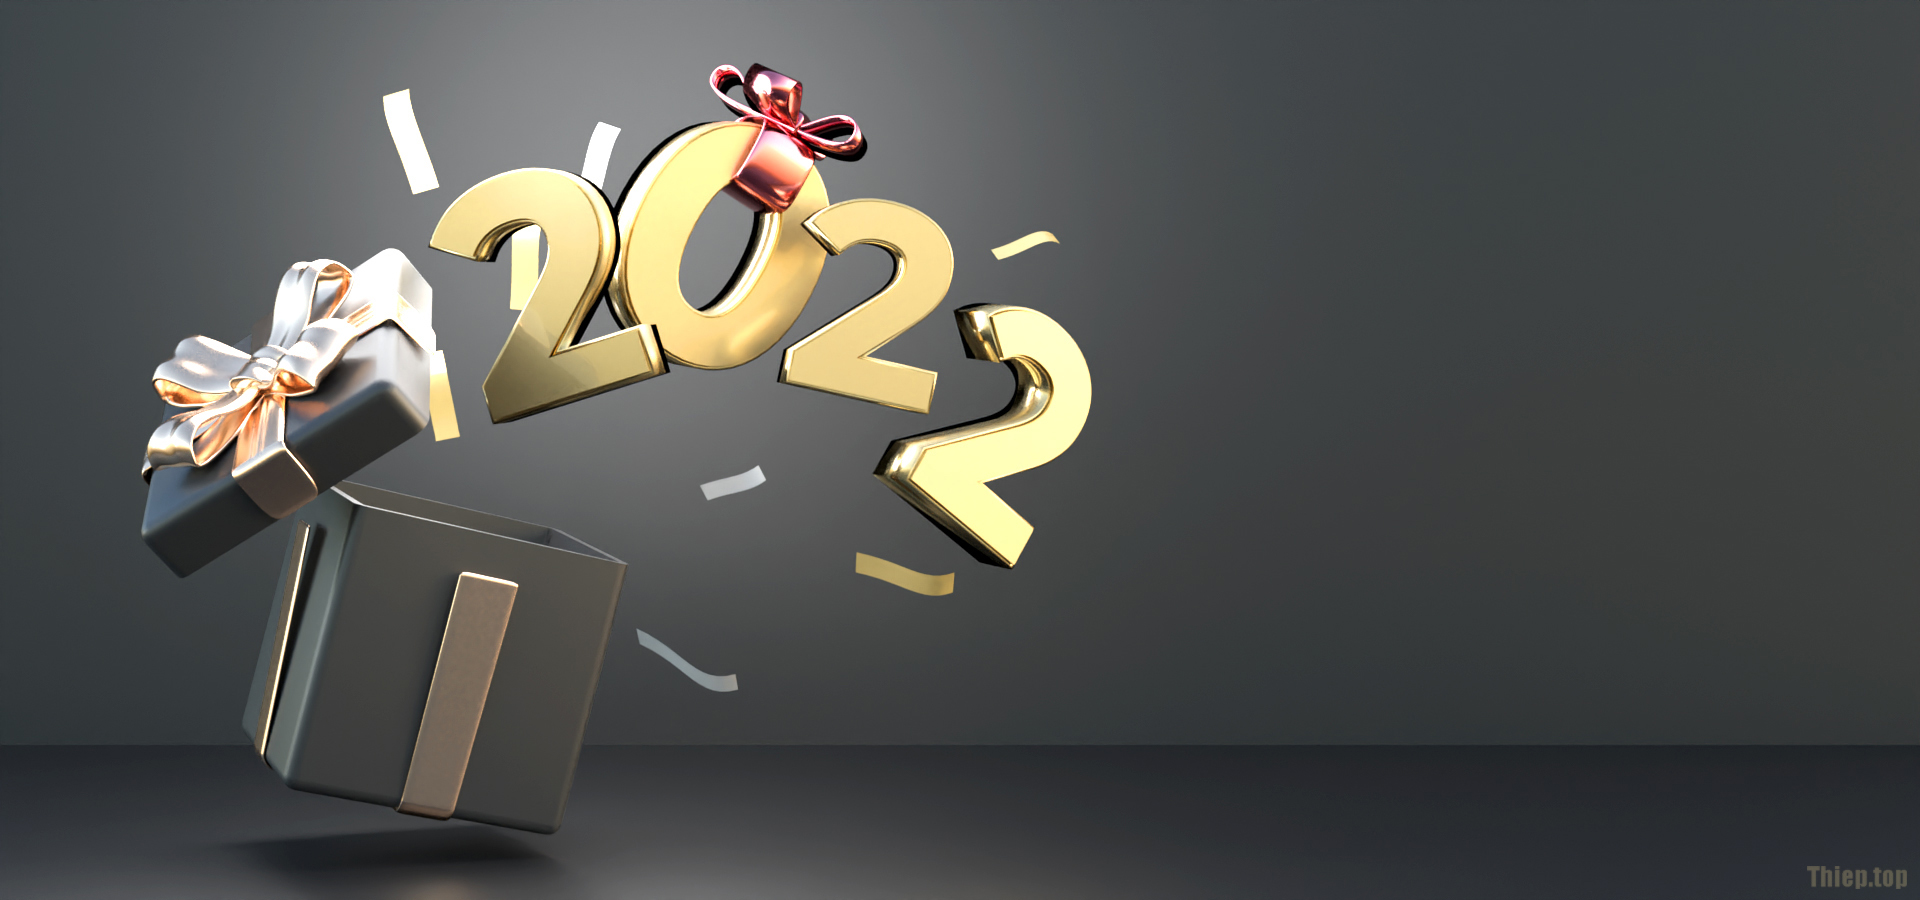 Top Hình nền chúc mừng năm mới 2022 Full HD Tải miễn phí - Hình 5